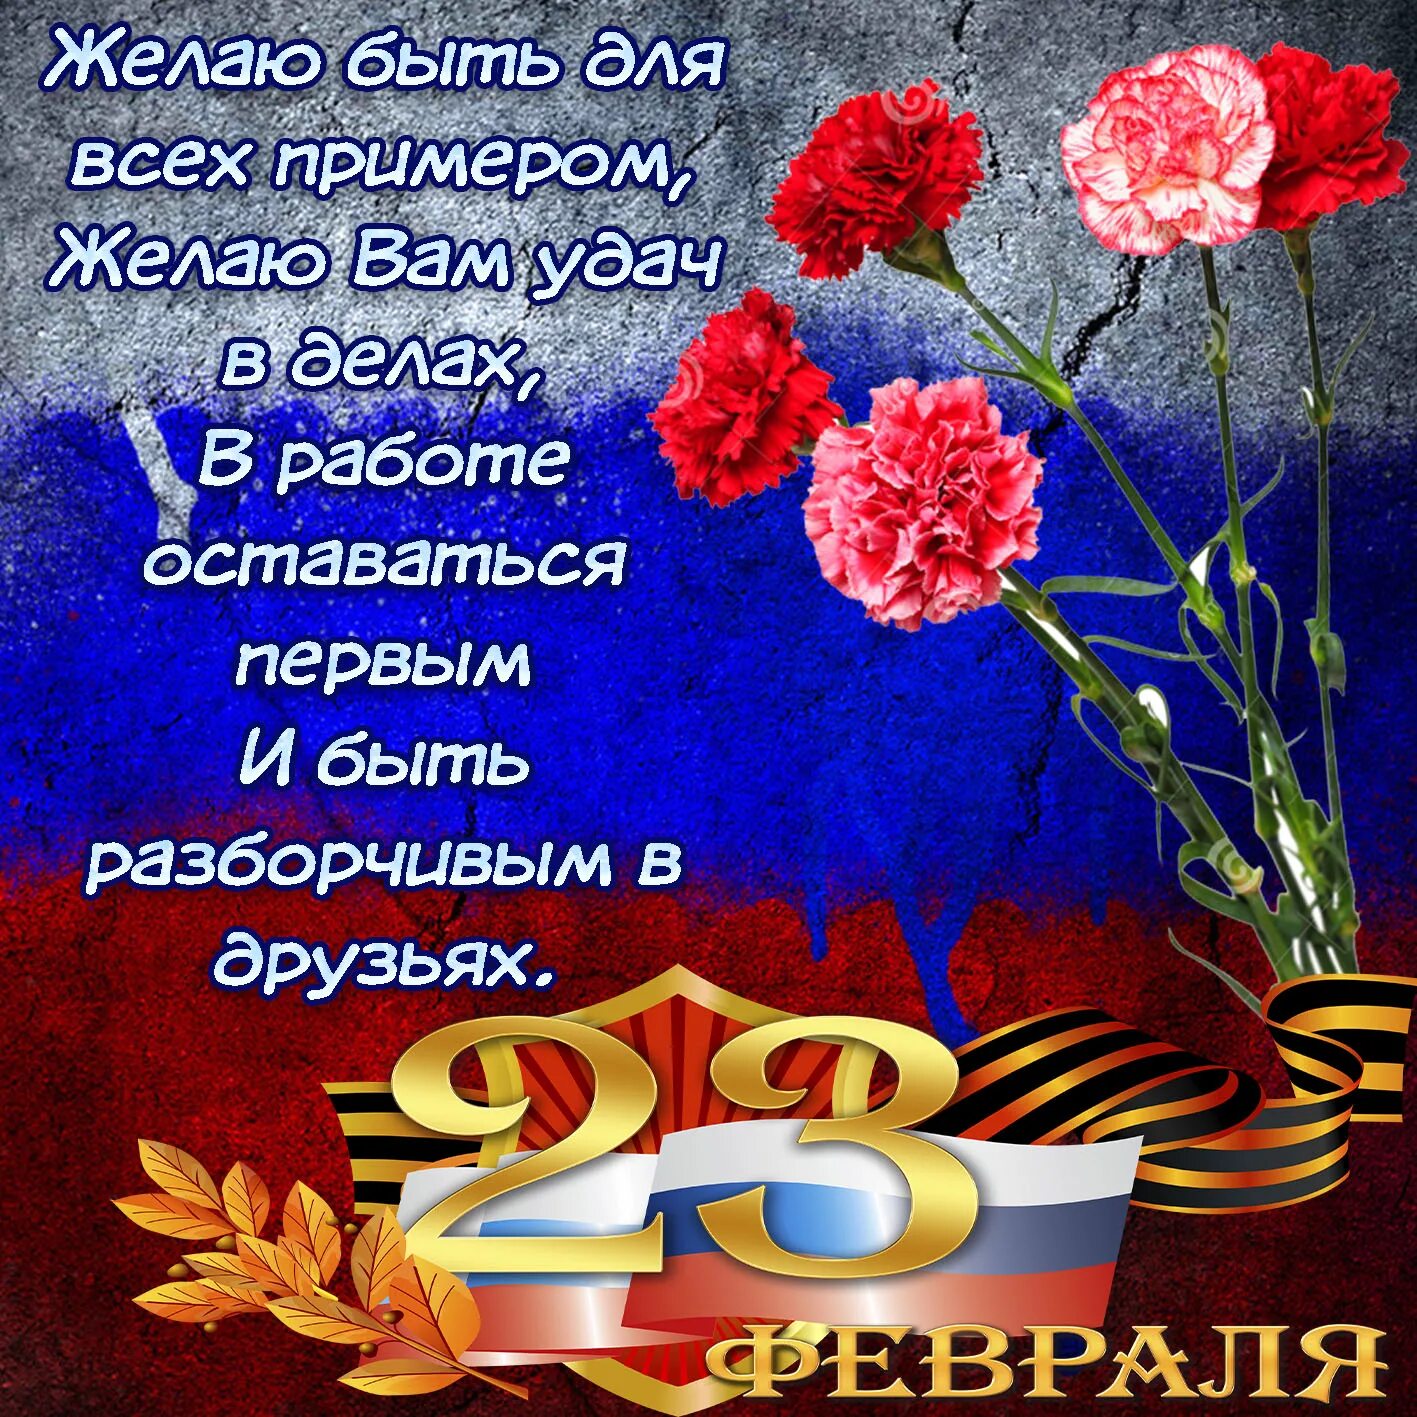 Поздравление с 23 февраля. С 23 февраля открытка с поздравлением. С днём защитника Отечества 23 февраля. Поздравление с 23 февраля мужчинам.